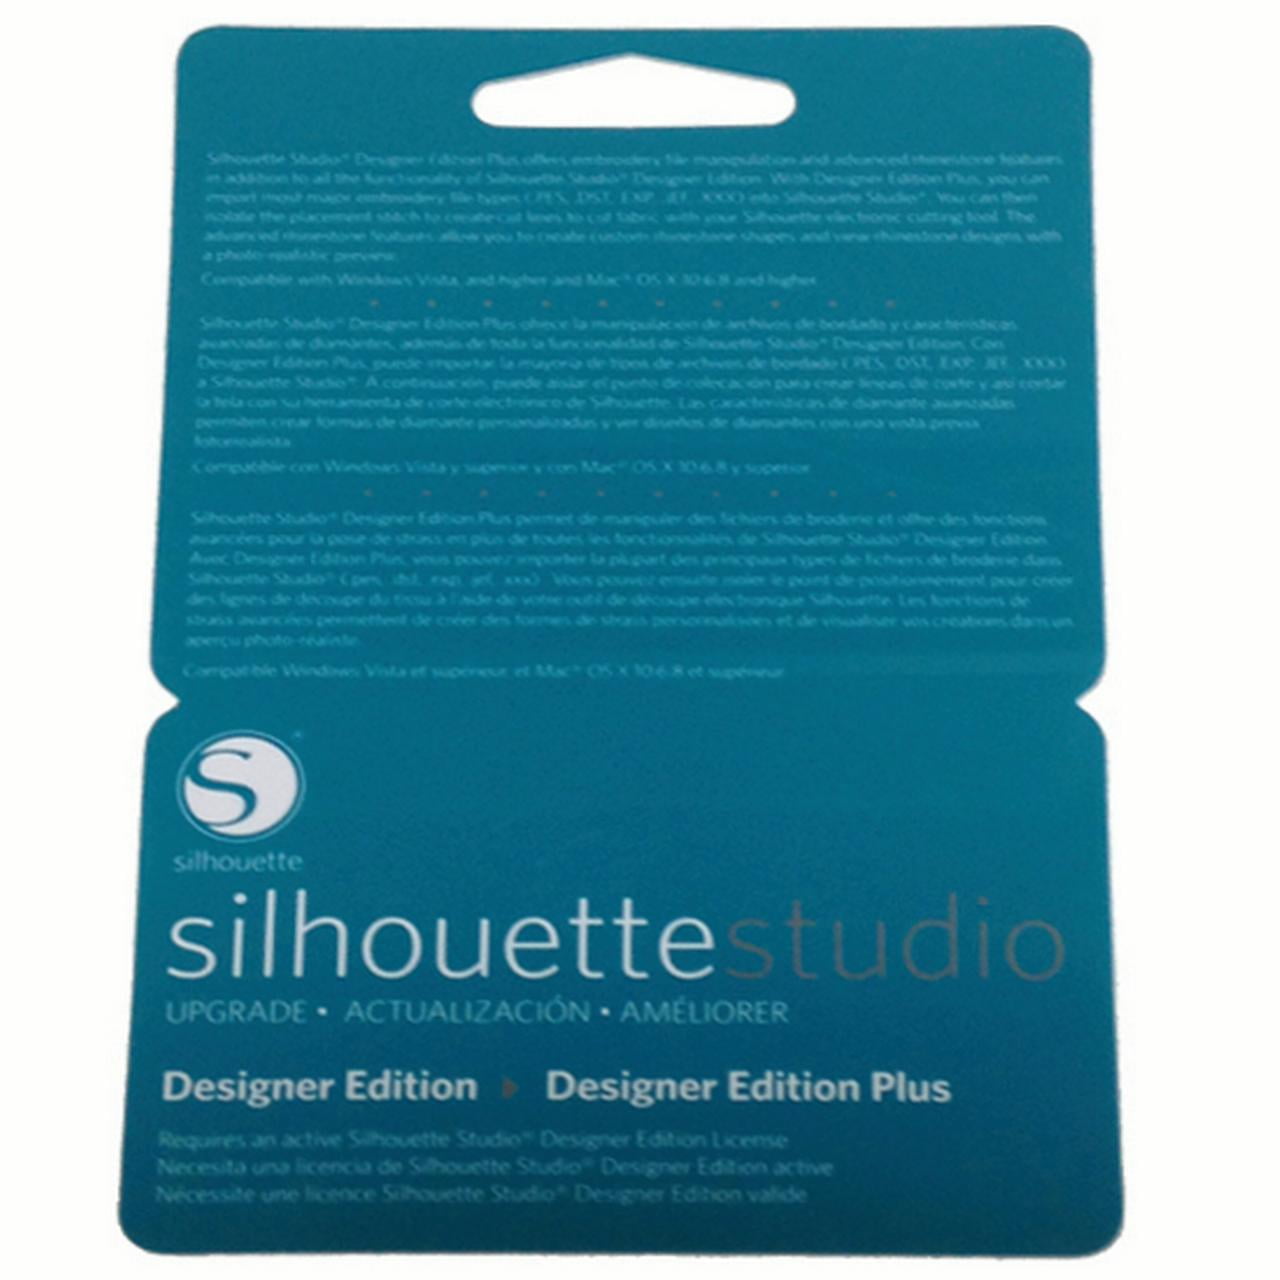 silhouette studio designer edition plus download